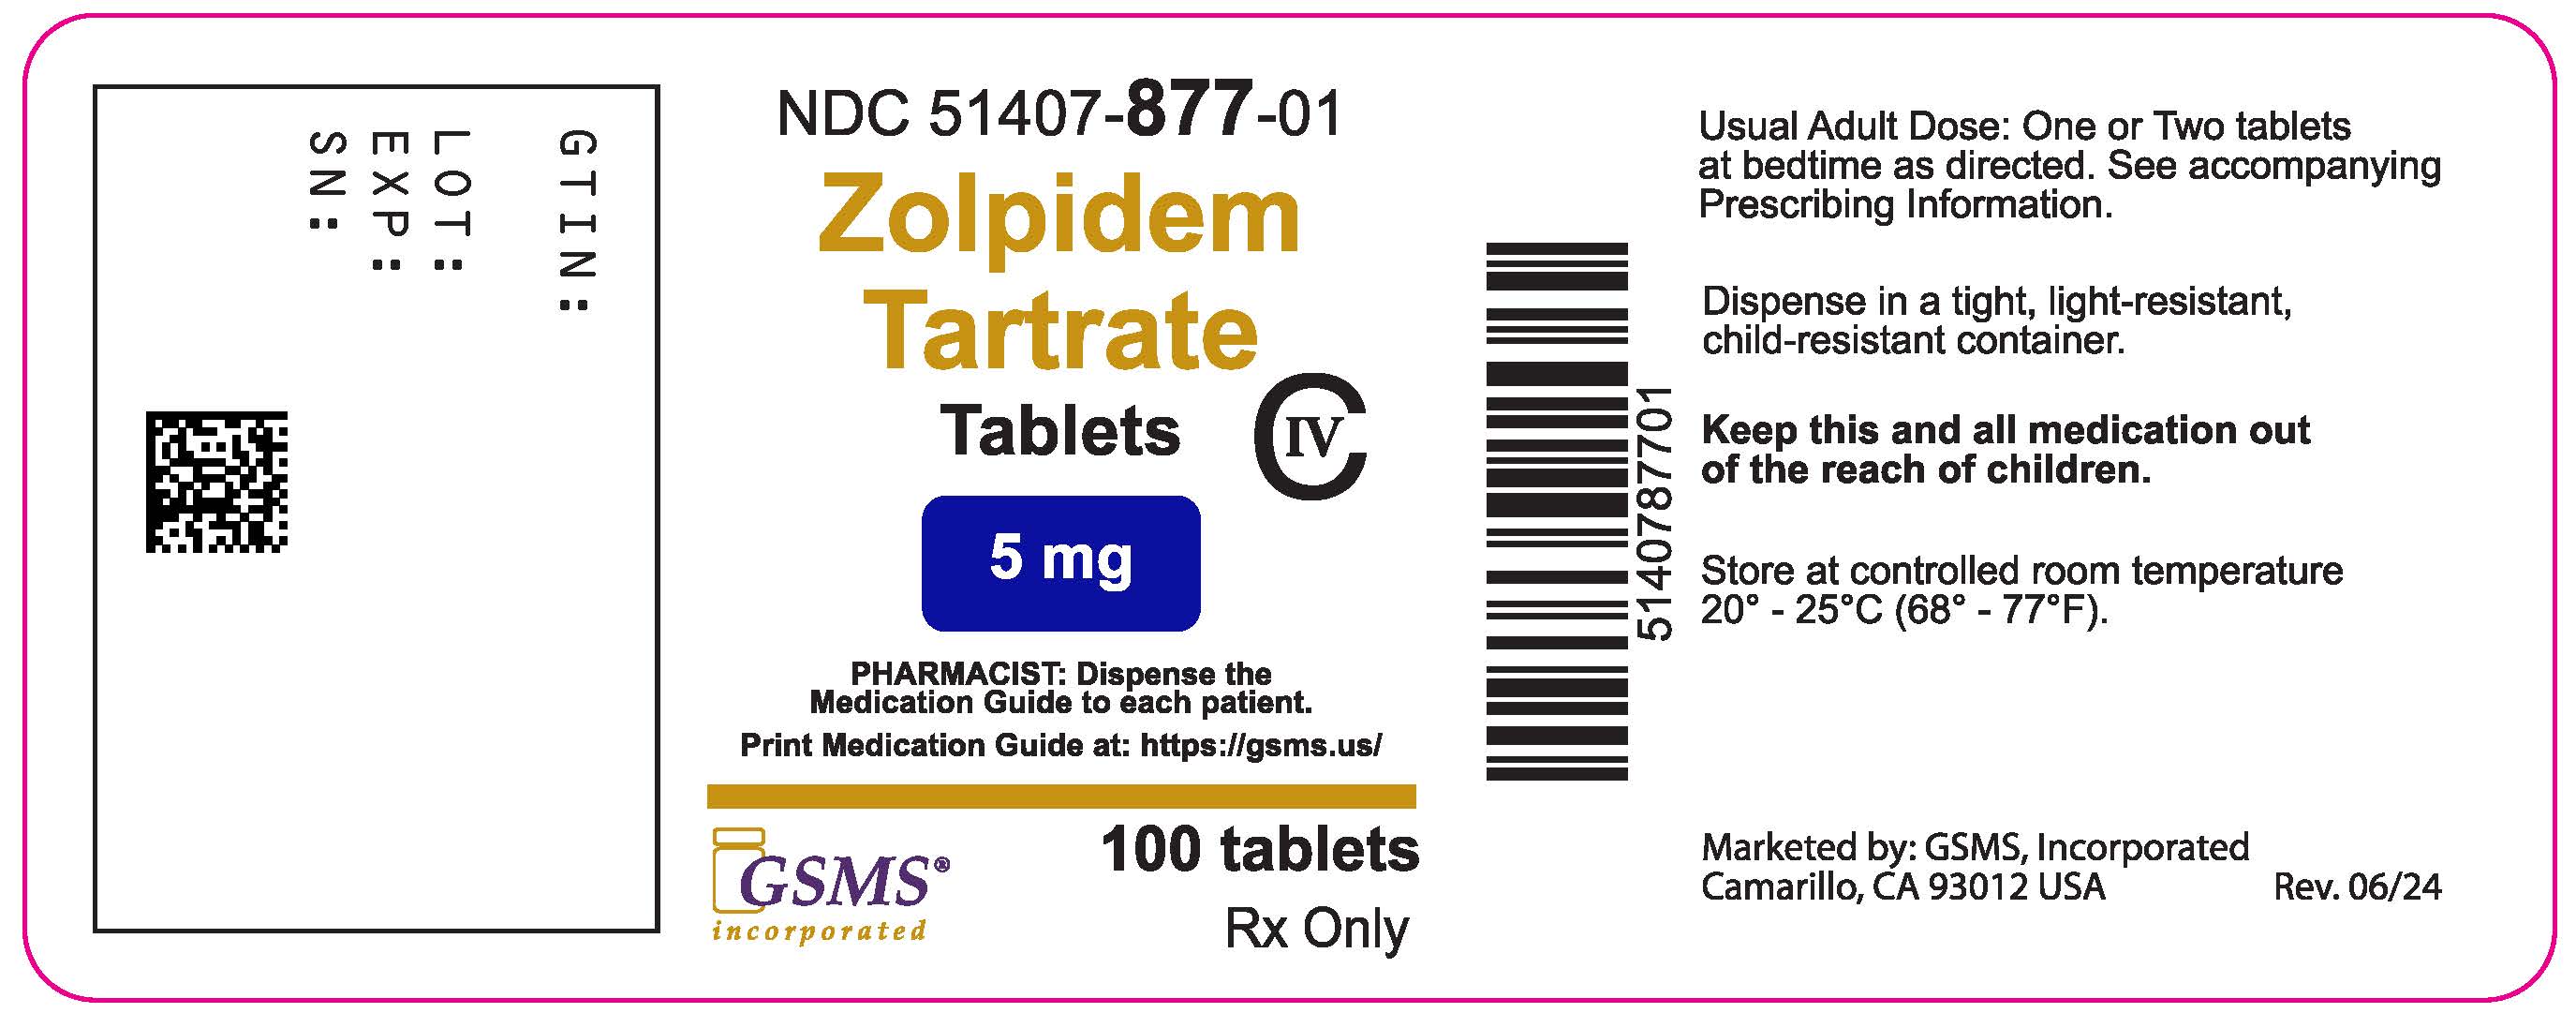 51407-877-01LB - Zolpidem 5 mg - Rev. 0624.jpg